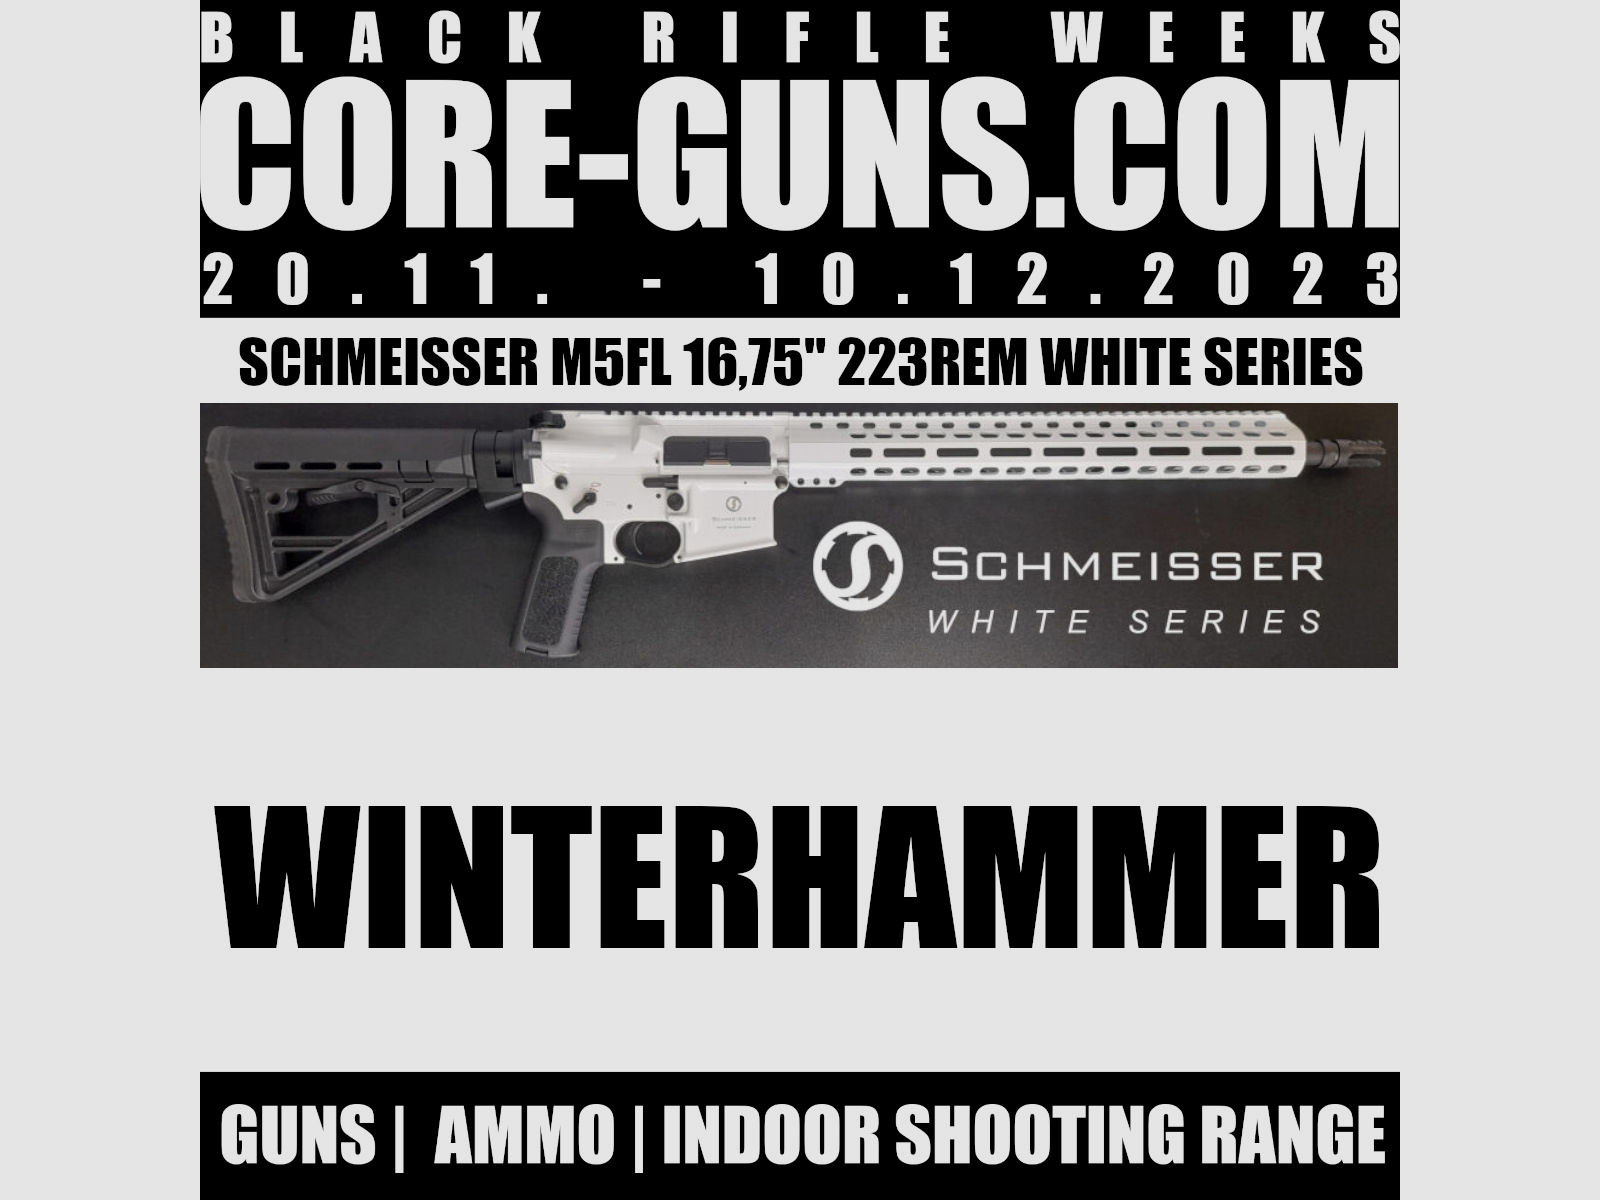 Schmeisser M5FL 16,75" AR15 - WHITE SERIES AR15 223Rem im Koffer  + im Koffer mit Flip Ups